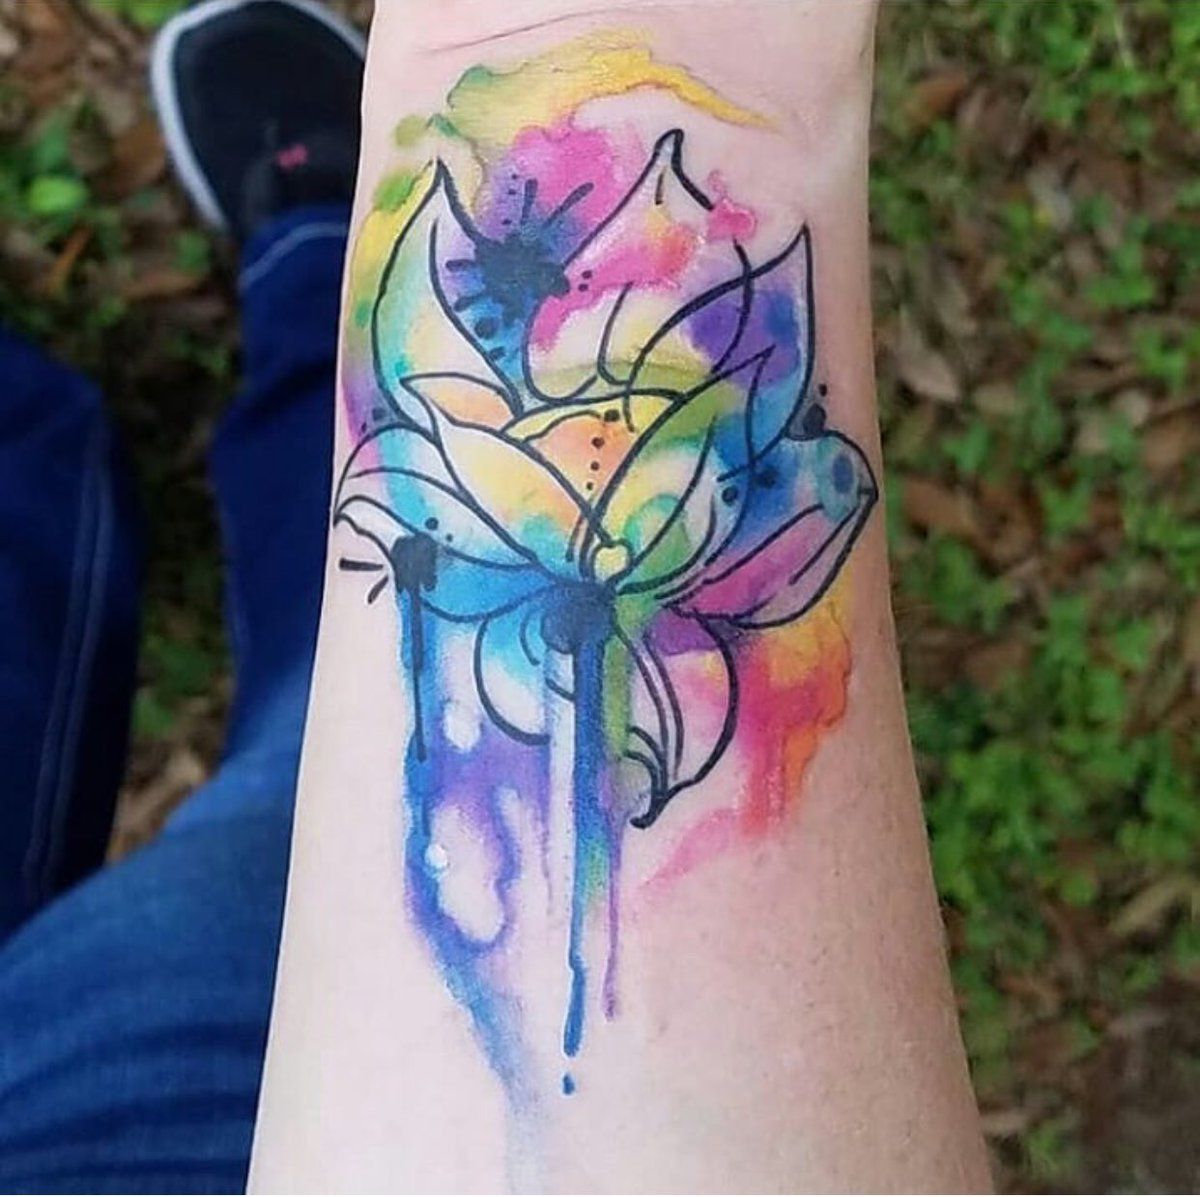 Lotus Watercolor Tattoos